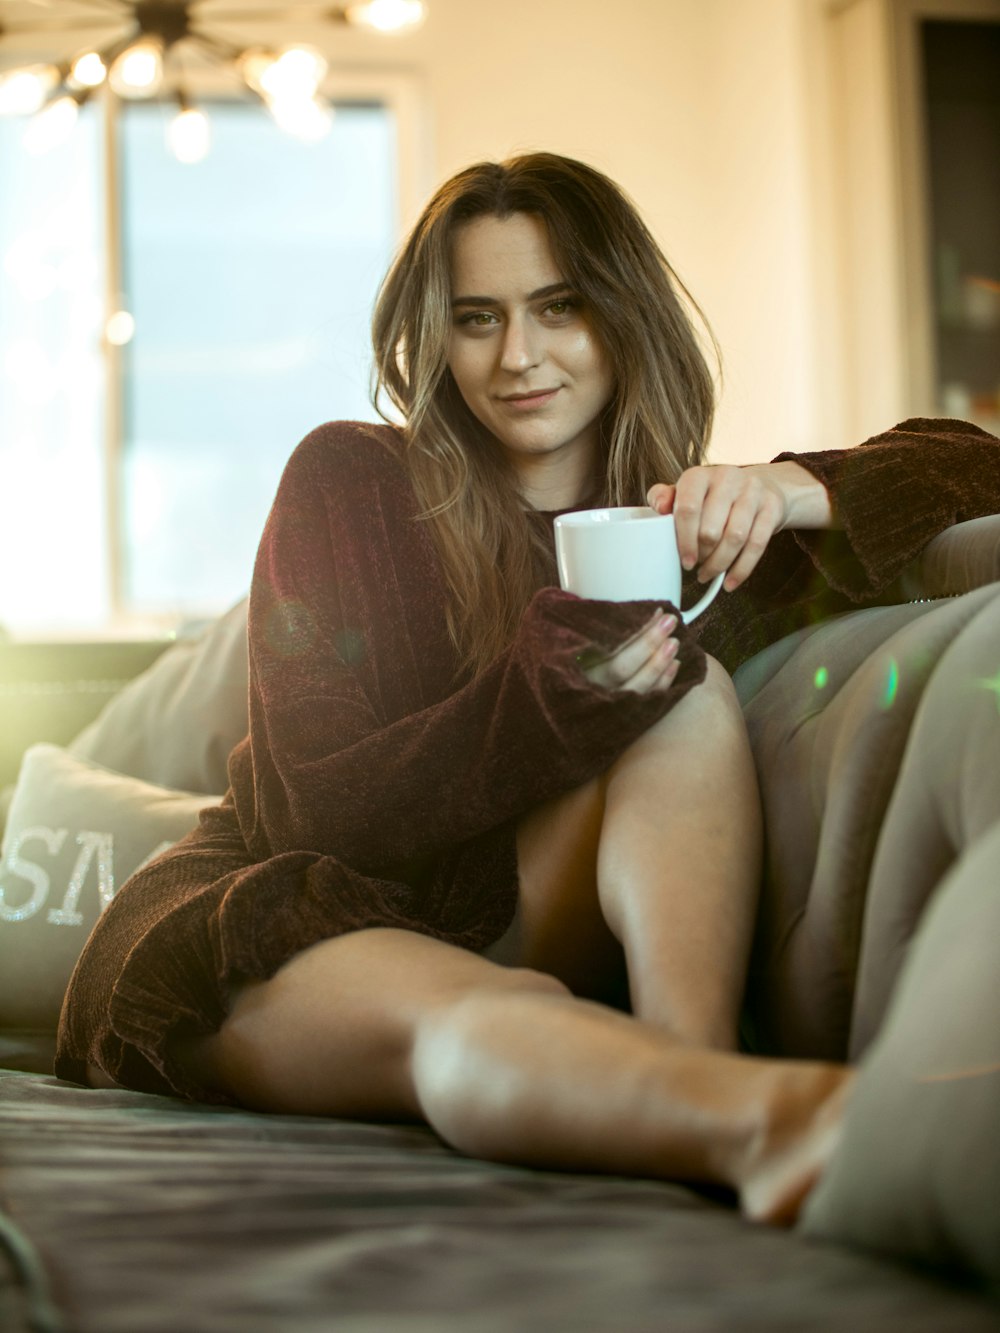 woman wearing maroon sweater sitting on sofa